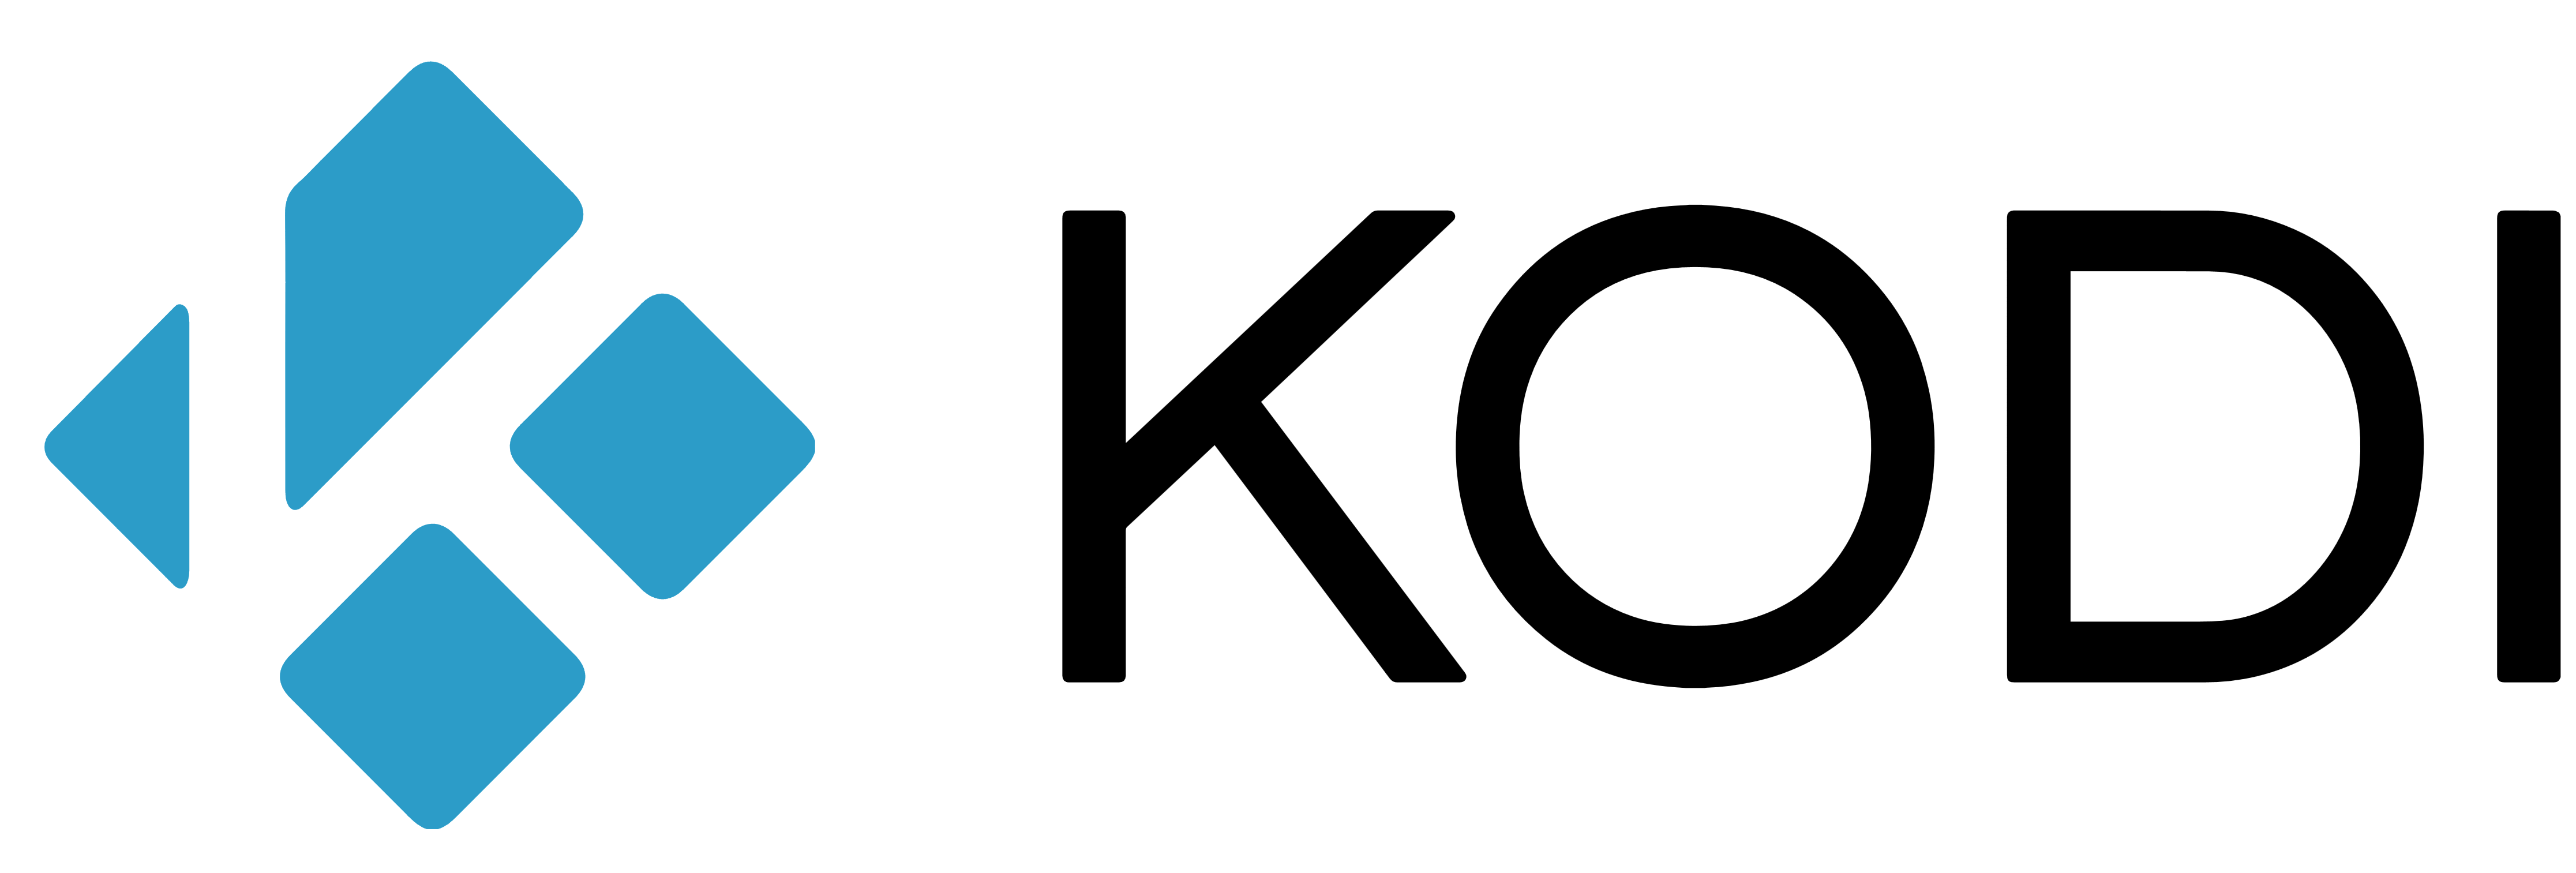 Kodi logo, logotype